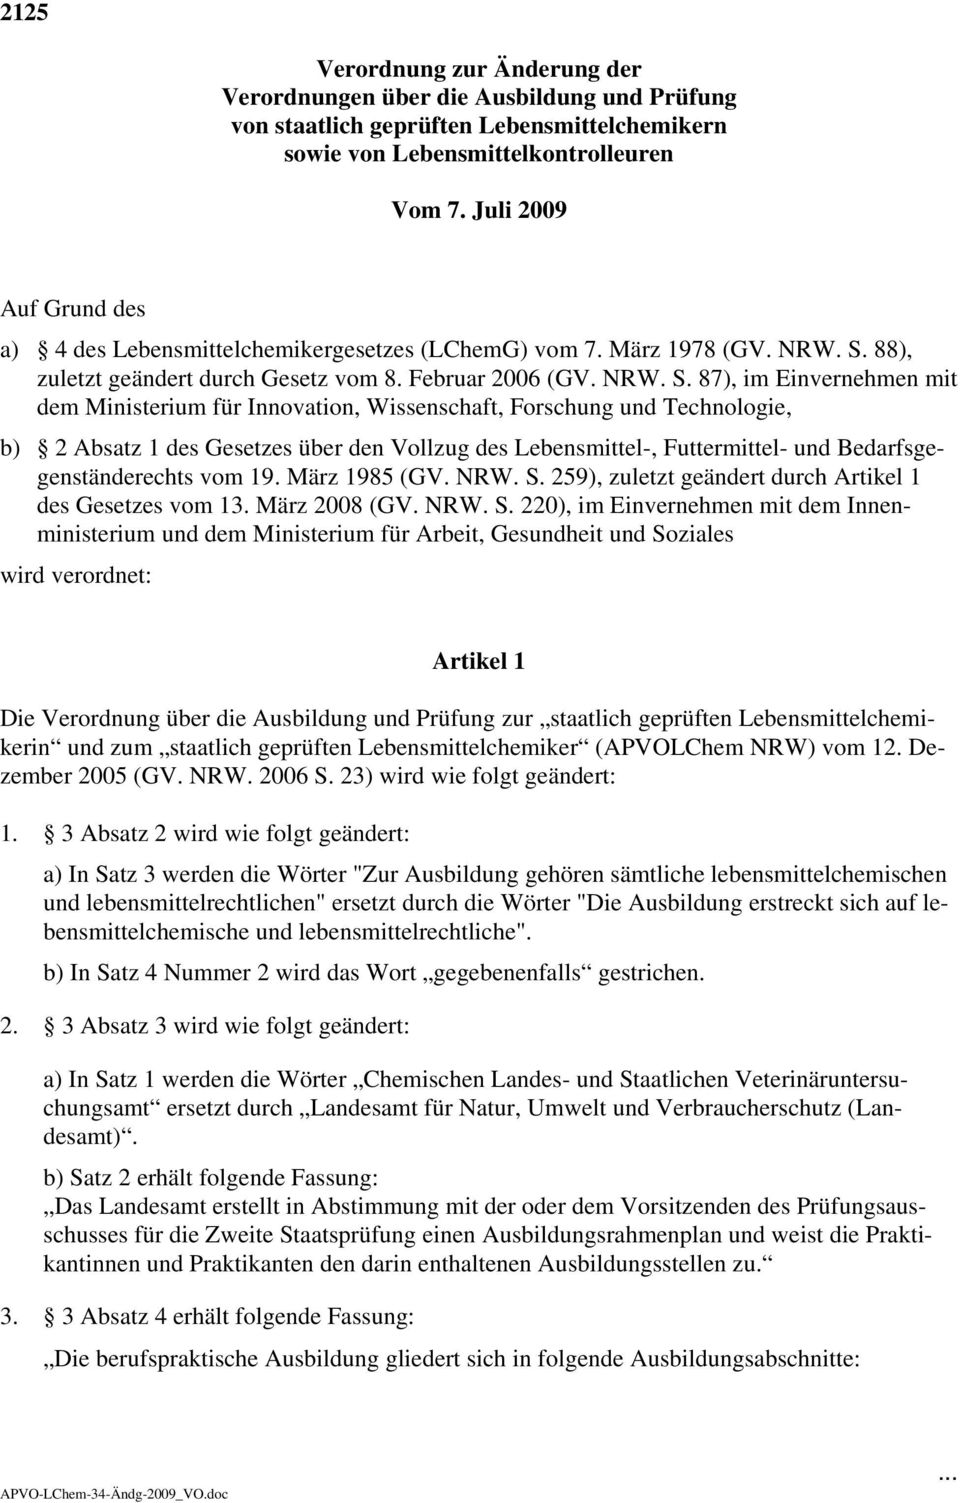 88), zuletzt geändert durch Gesetz vom 8. Februar 2006 (GV. NRW. S.